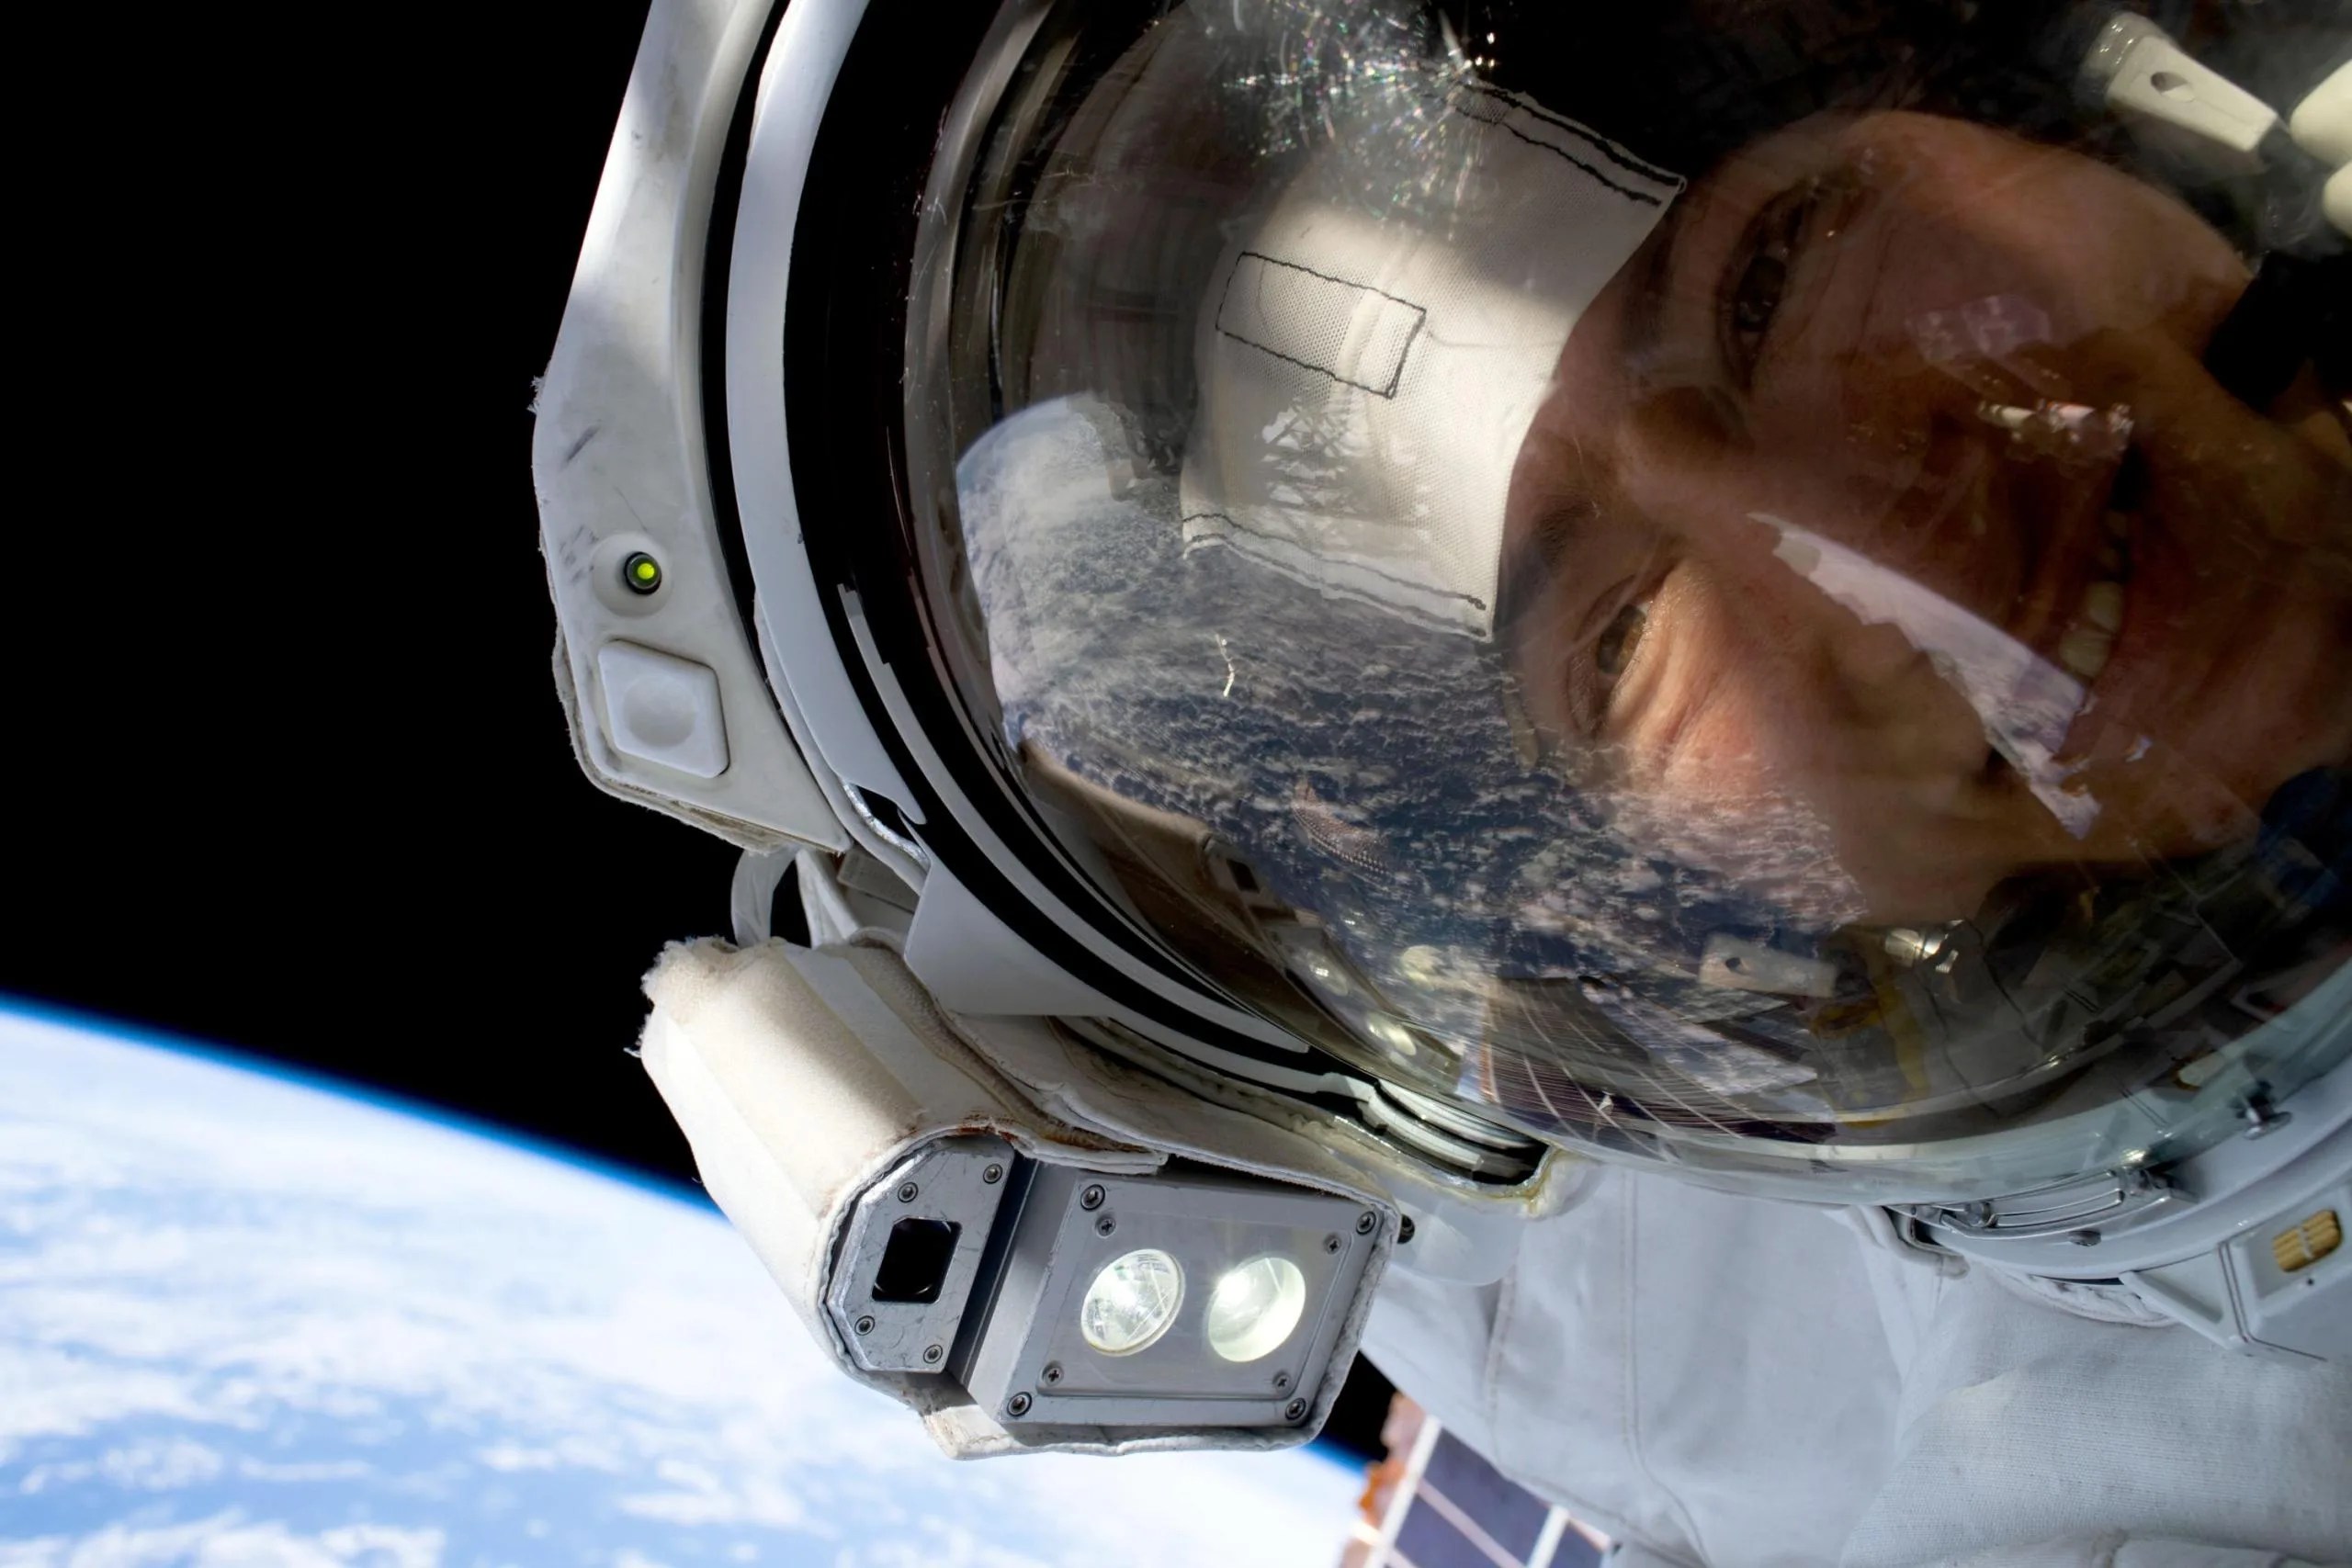 La astronauta de la NASA Christina Koch hace una pausa mientras ayuda a reemplazar equipos en la Estación Espacial Internacional. Ella y sus compañeros astronautas enfrentan una serie de efectos en su salud mientras permanecen en el espacio. Créditos: NASA